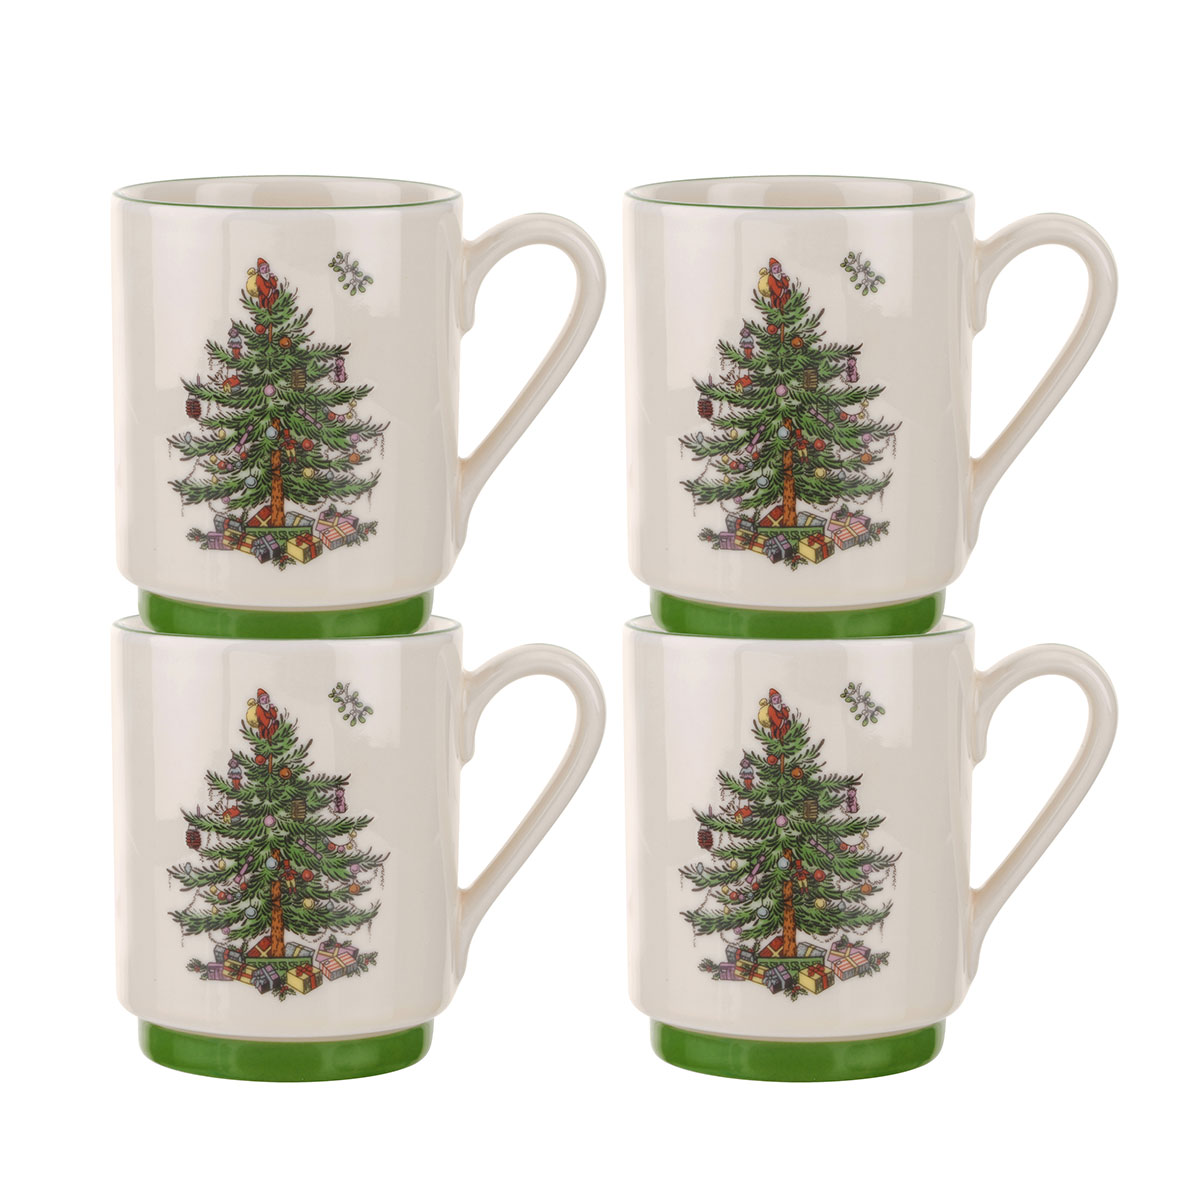 Spode Christmas Tree Set of 4 Stacking Mugs